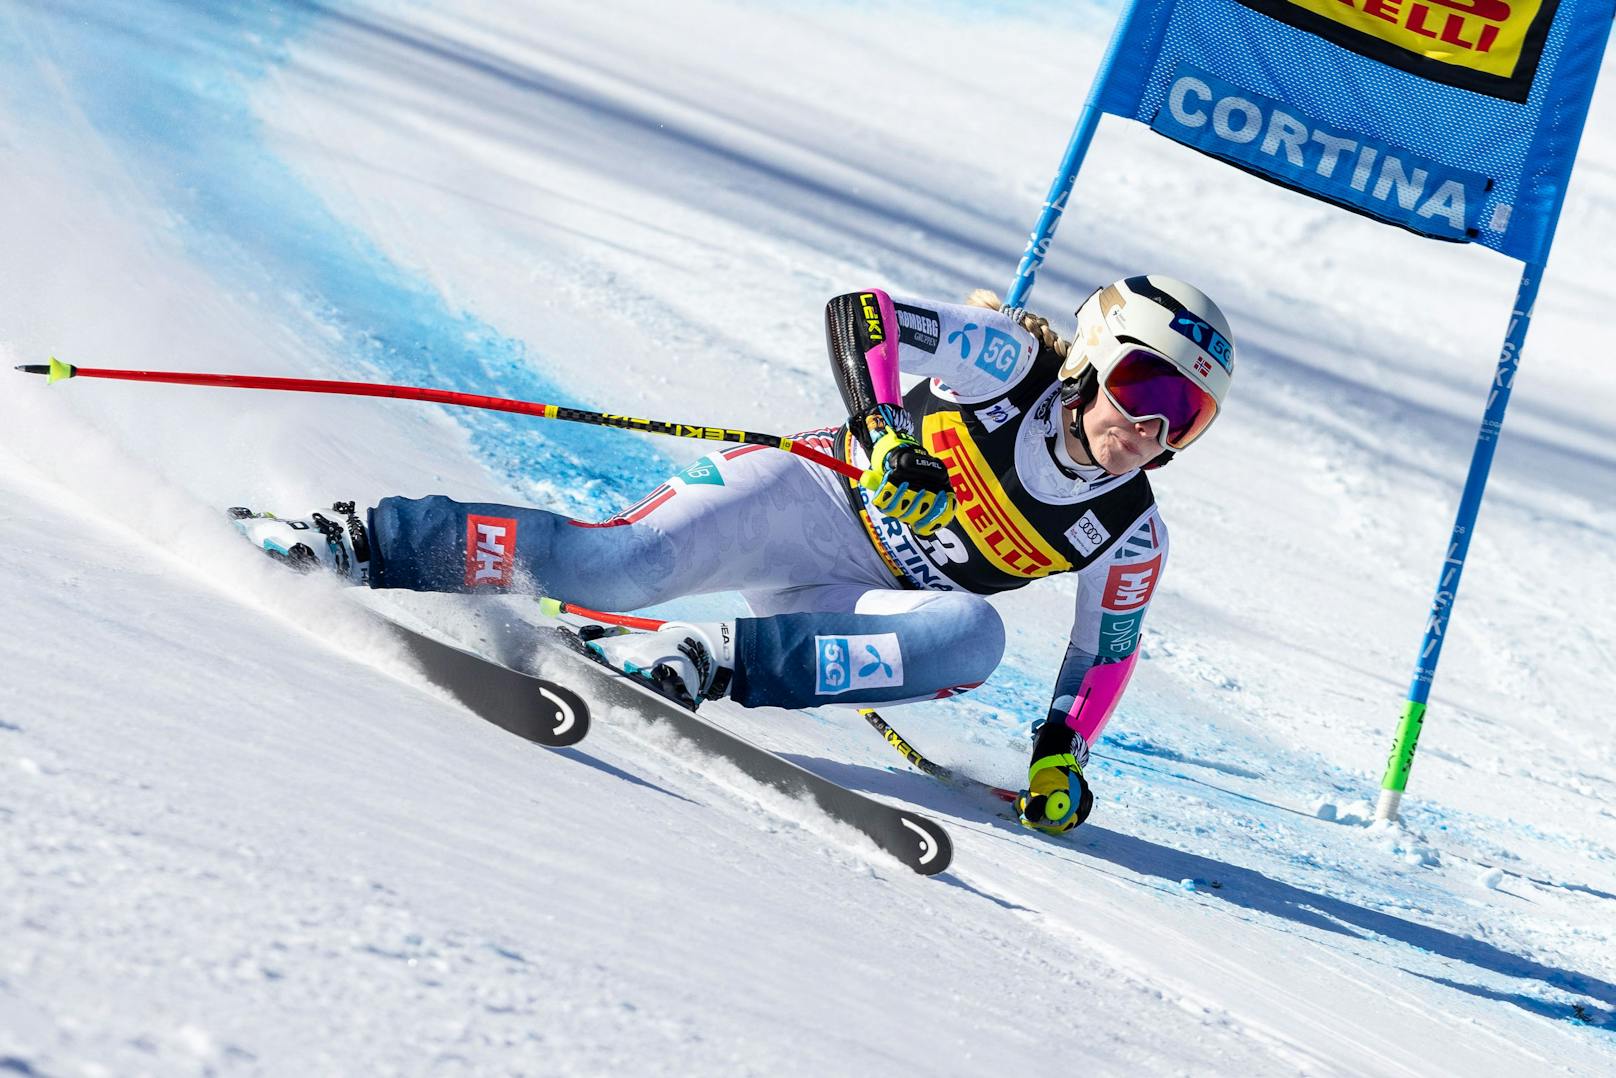 Bei der zweiten Abfahrt in Cortina feierte Ragnhild Mowinckel ihren vierten Weltcupsieg. Die Norwegerin gewann vor Jacqueline Wild aus den USA und Sofia Goggia aus Italien. Auch im zweiten Rennen war Stephanie Venier auf dem fünften Platz beste ÖSV-Athletin.